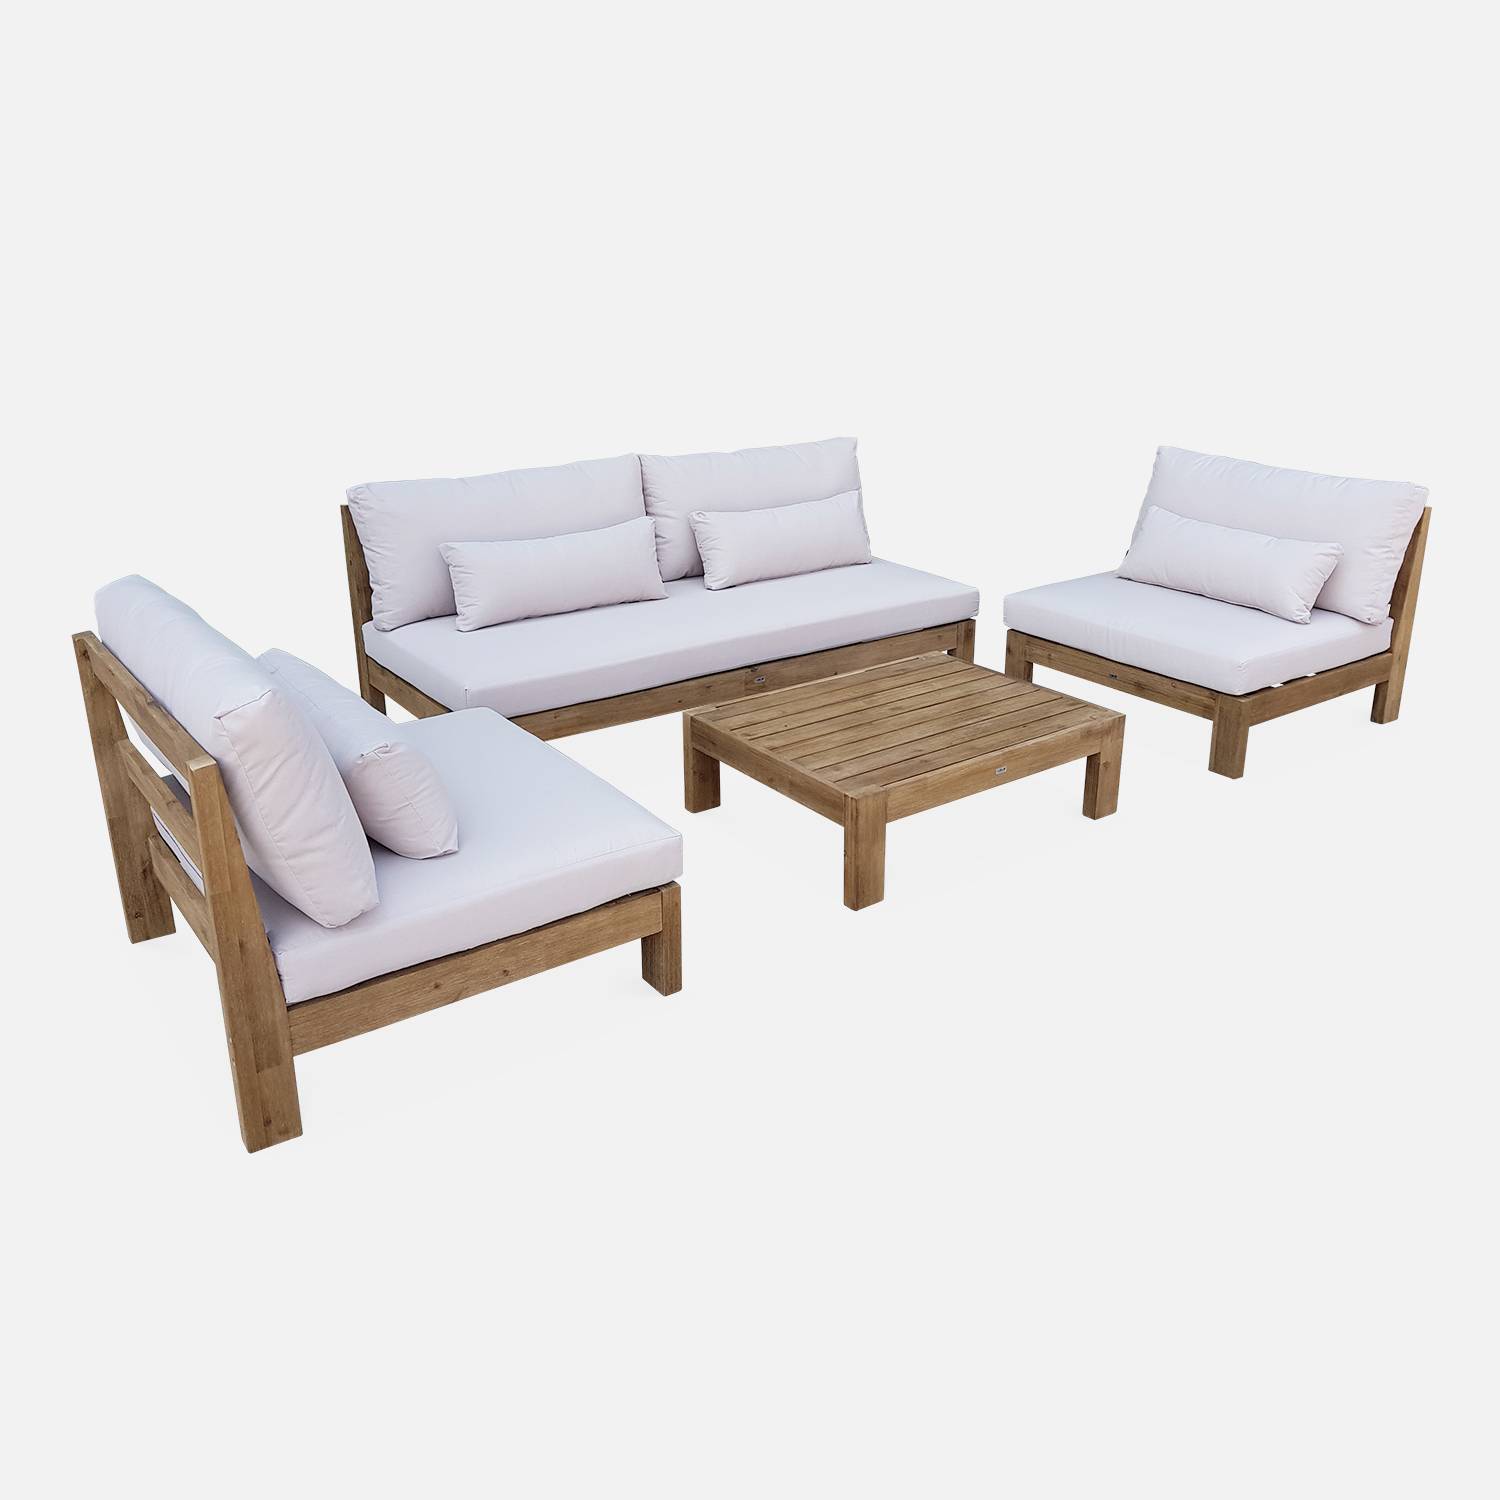 Muebles de jardín XXL con madera cepillada, efecto blanqueado - BAHIA - cojines beige, de 5 a 7 plazas | sweeek